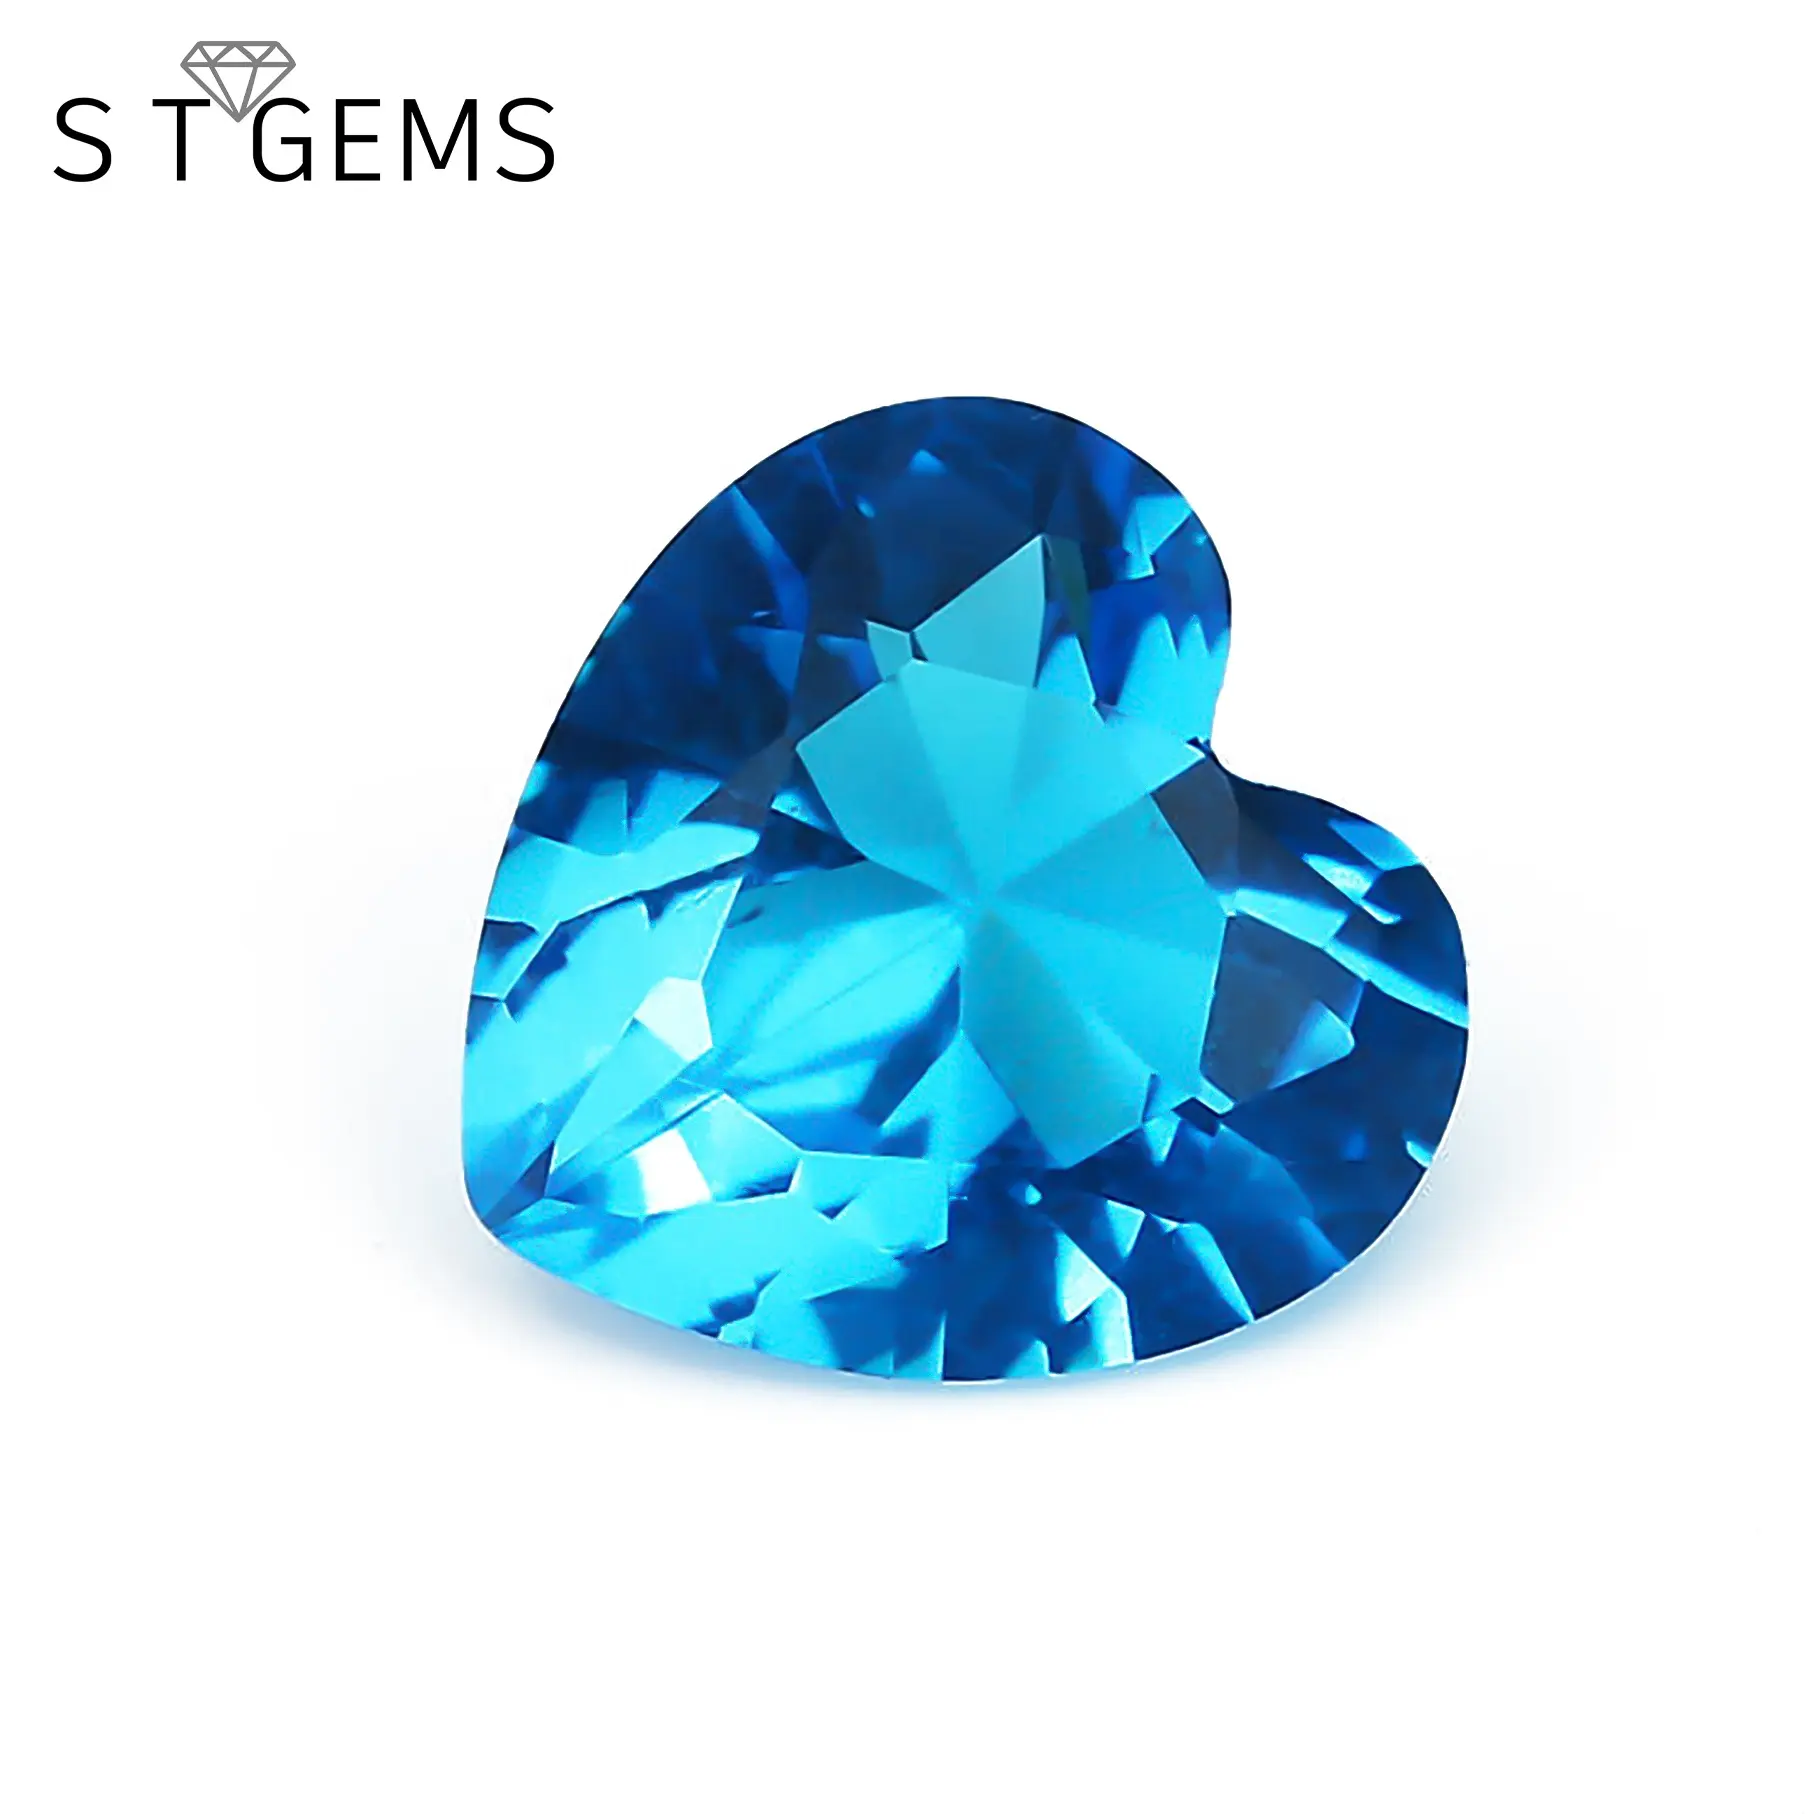 رخيصة الثمن أحجار كريمة مفكوكة القلب شكل الاصطناعية الكريستال الحجارة والزجاج للمجوهرات